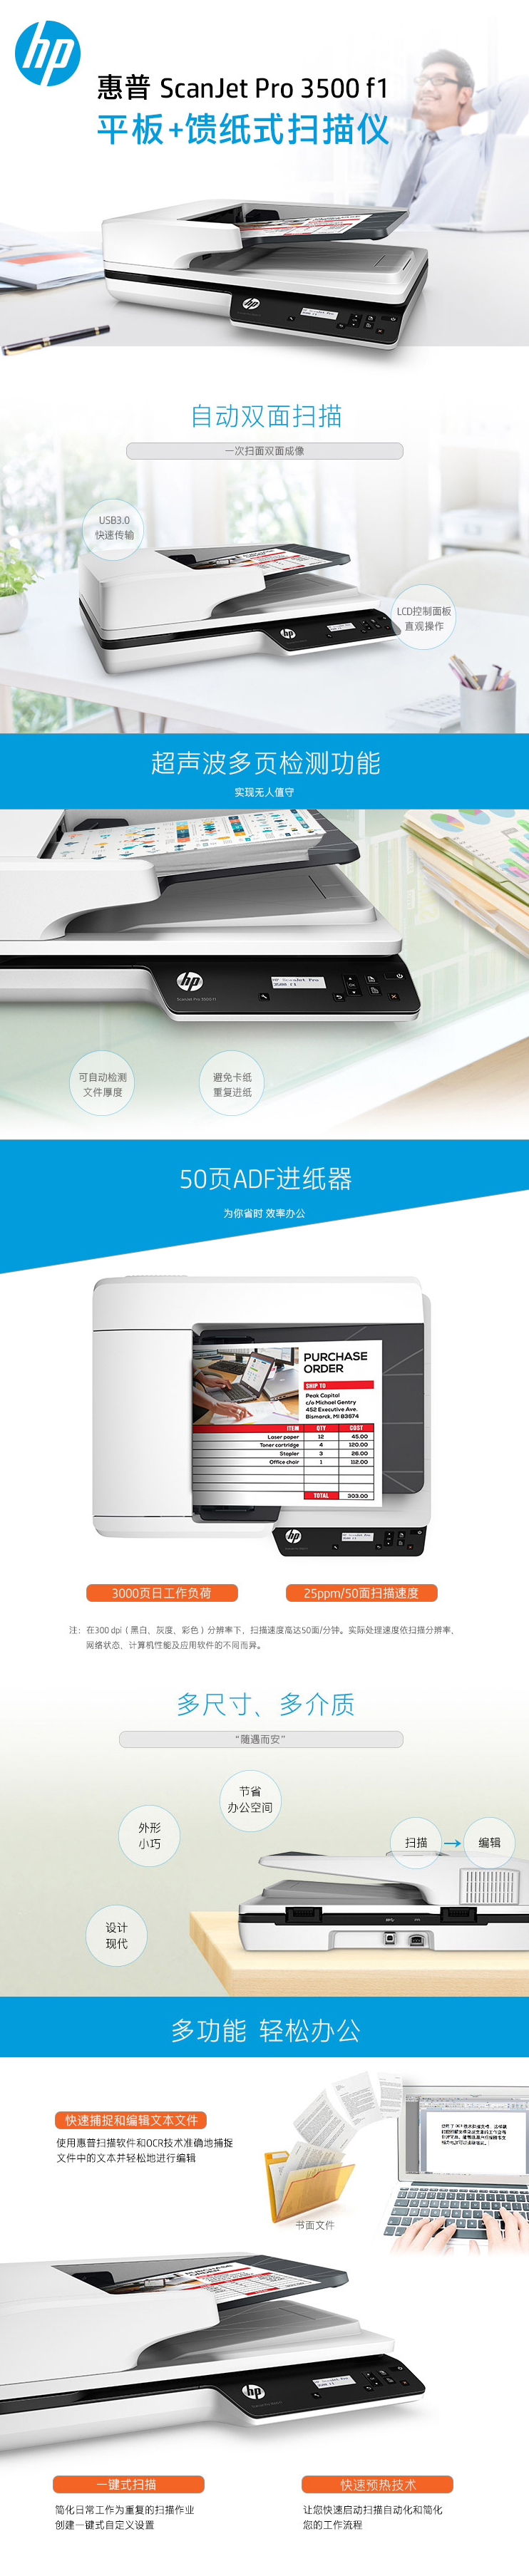 【惠普3500 f1】惠普（HP) Scanjet Pro 3500f1 A4扫描仪（免费送货上门）.png